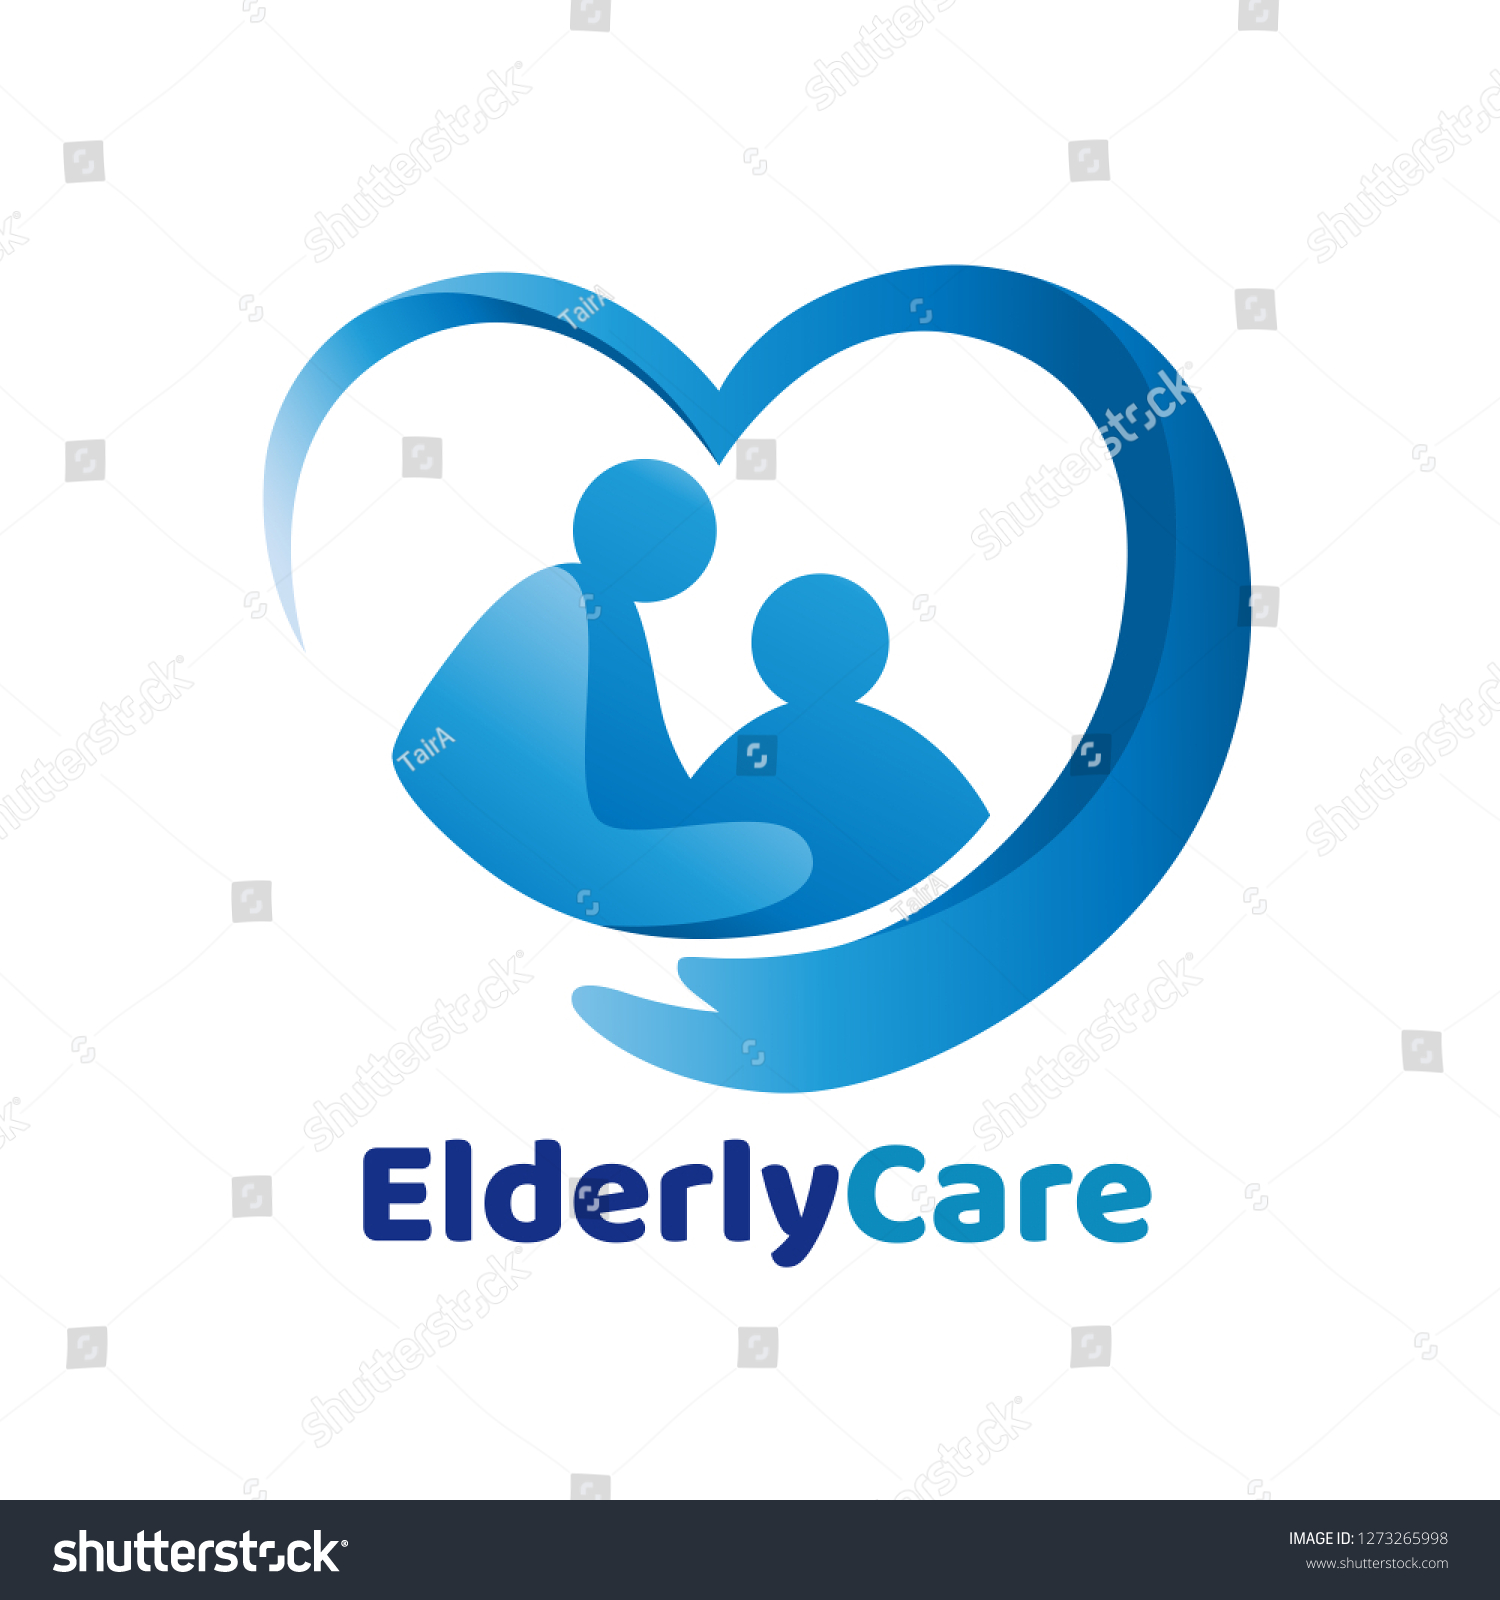 Stock Vector Elderly Healthcare Heart Shaped Logo Nursing Home Sign 1273265998 